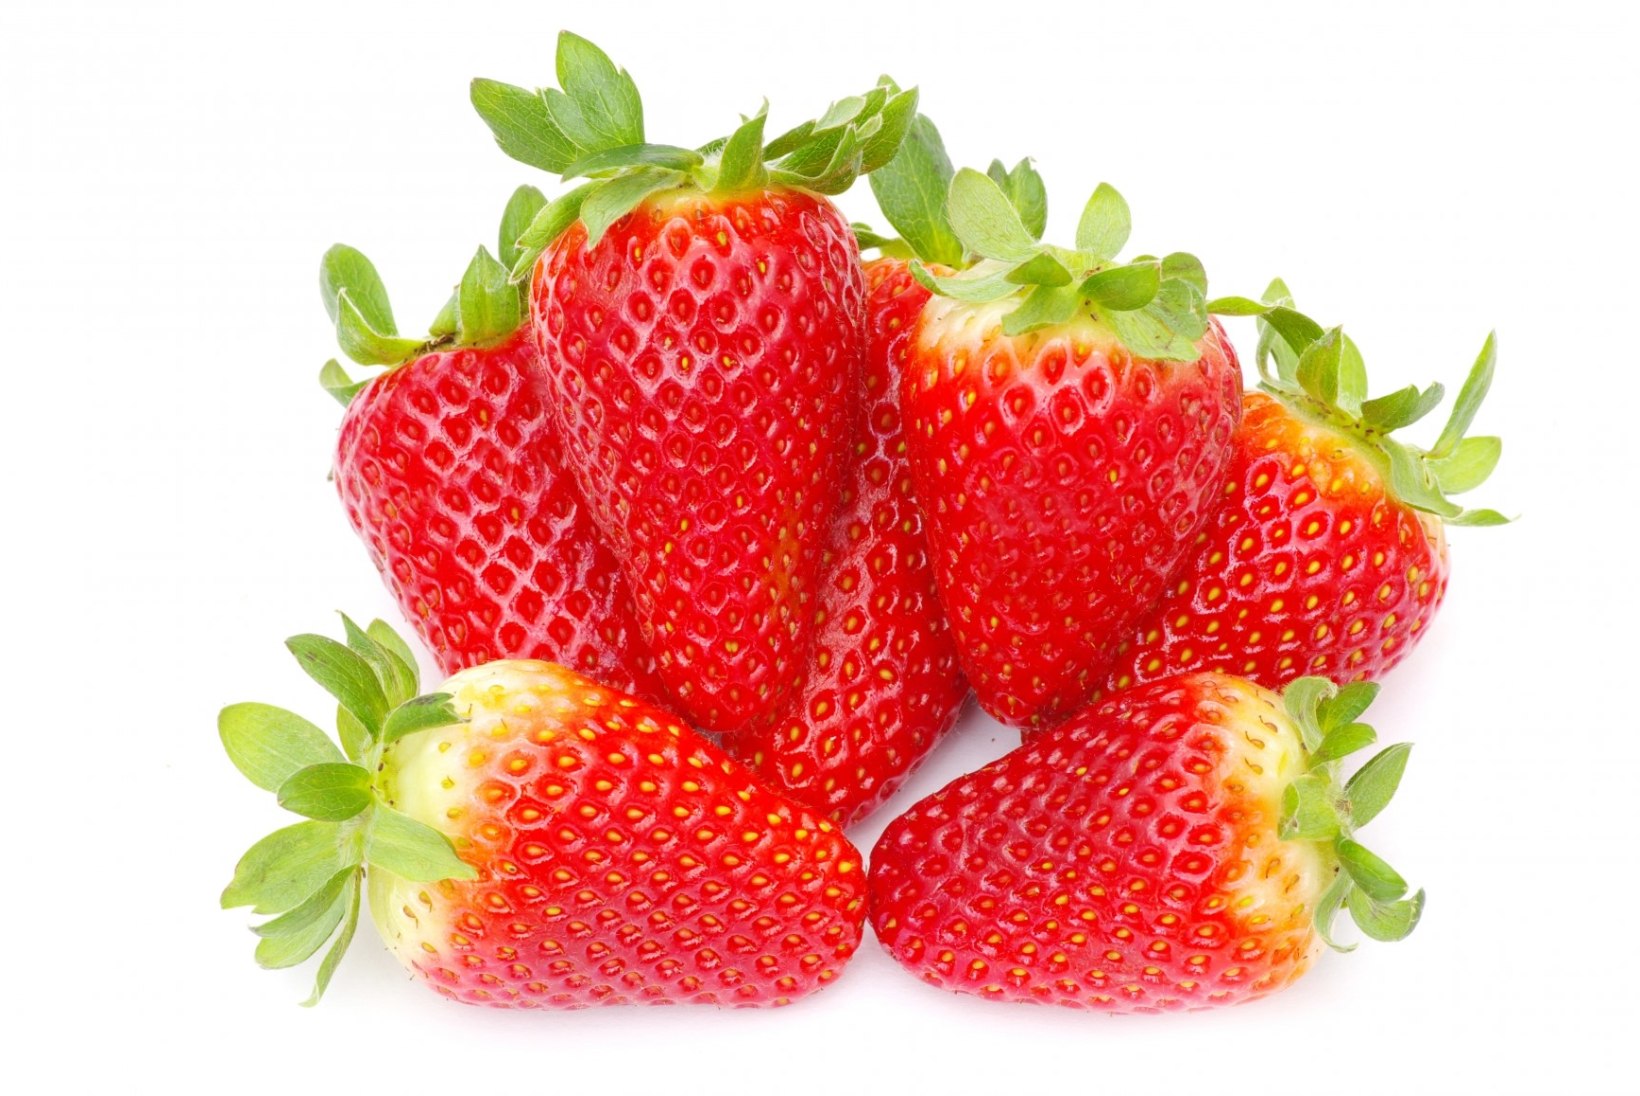 Tervislik saunarituaal: tee ise maasikamask